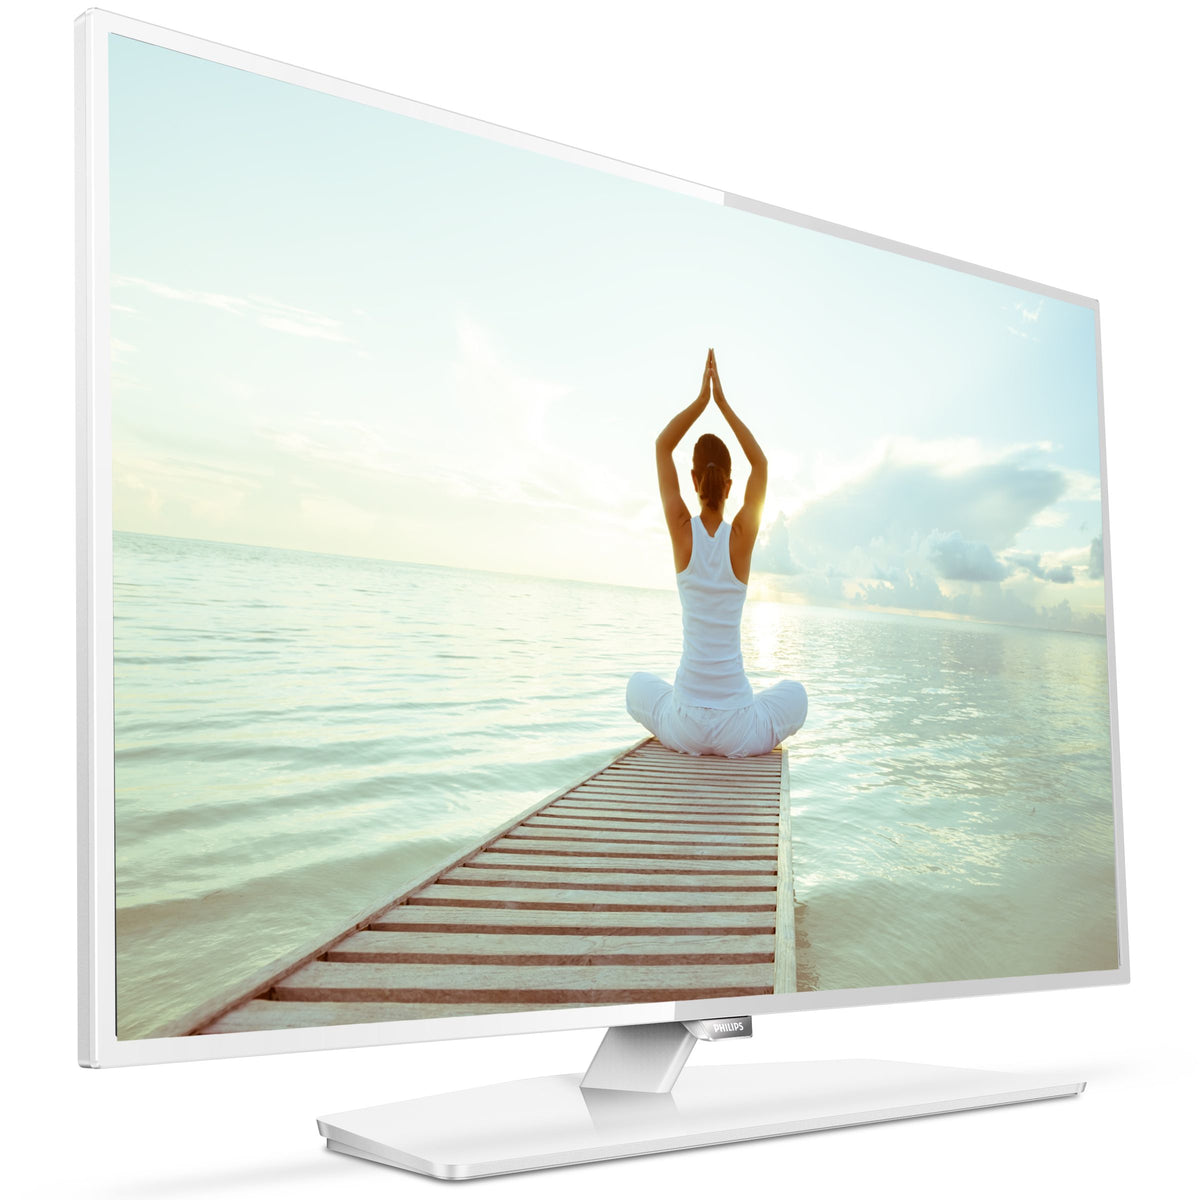 Philips 32HFL3011W - Televisor LCD EasySuite Diagonal Class de 32" con retroiluminación LED - Hotel / Hostelería - 720p 1366 x 768 - Blanco